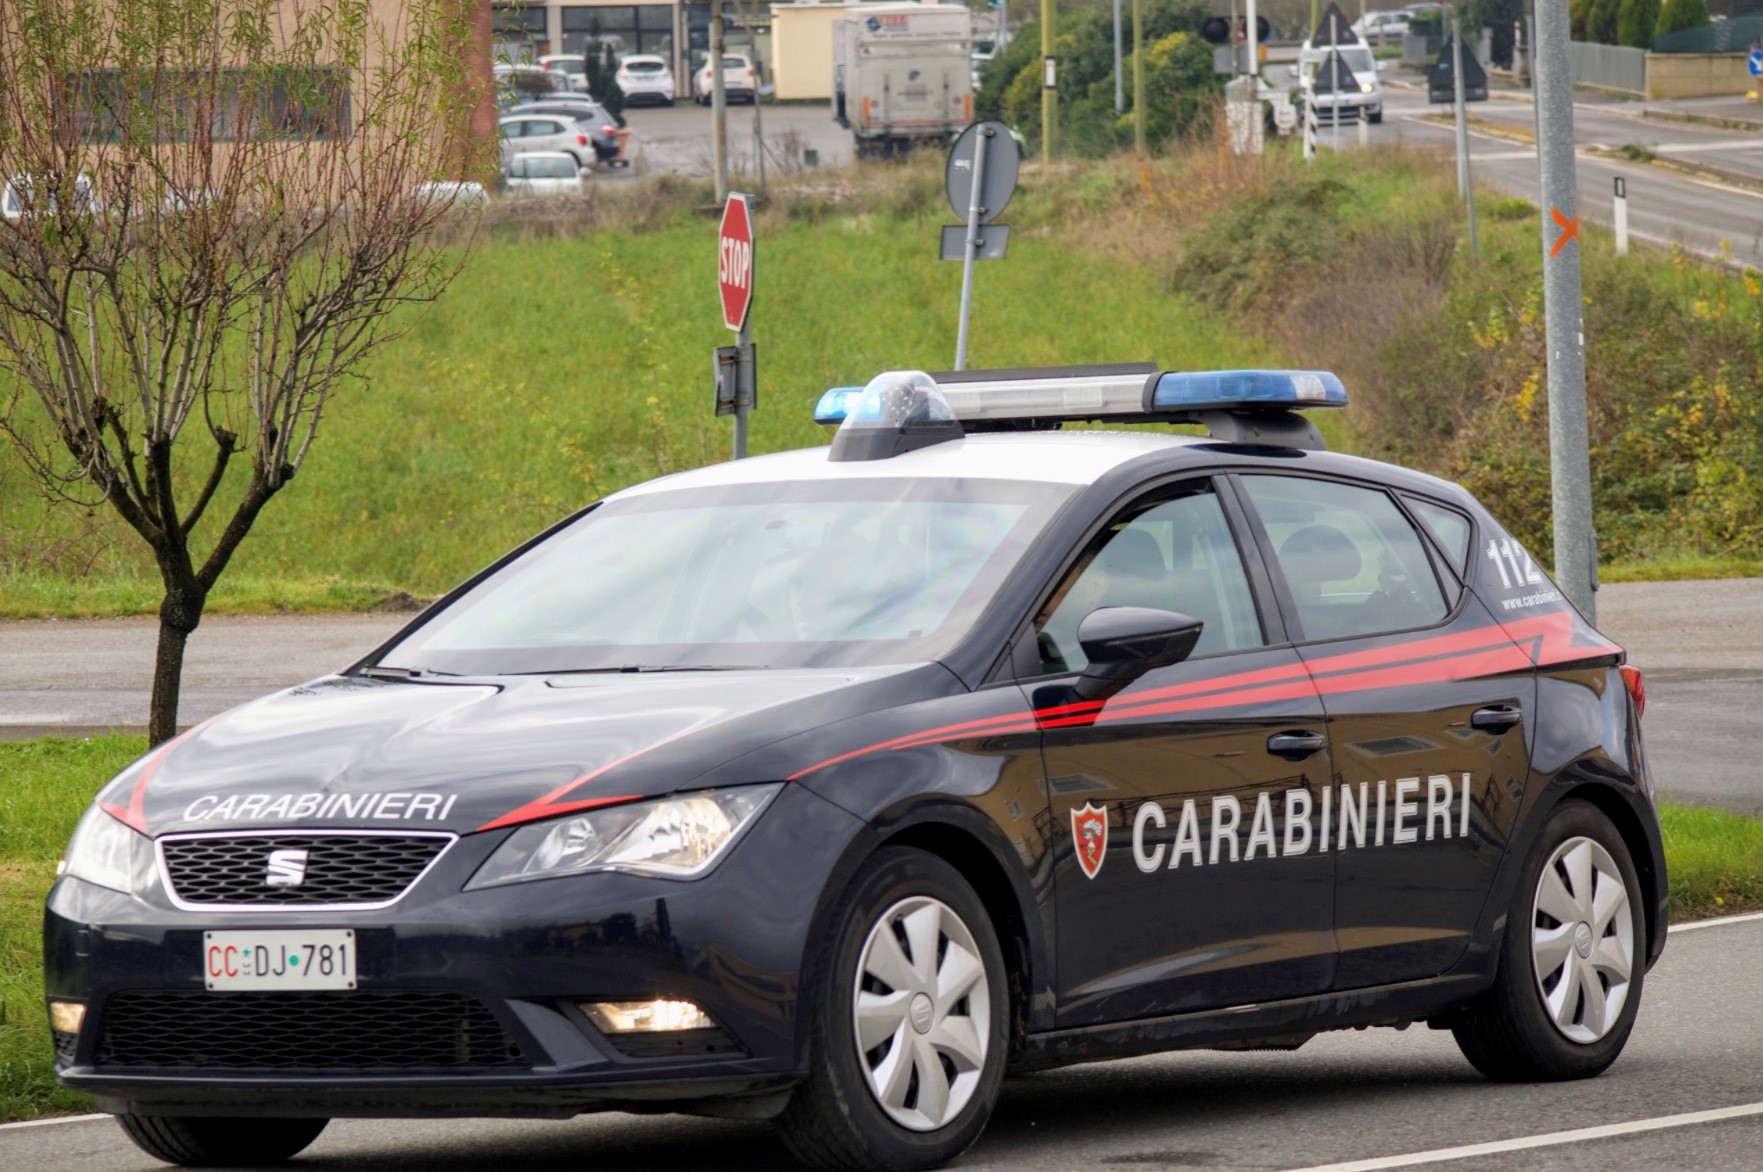 Ricoverato al Pronto Soccorso dà in escandescenza e aggredisce i Carabinieri: arrestato 36enne